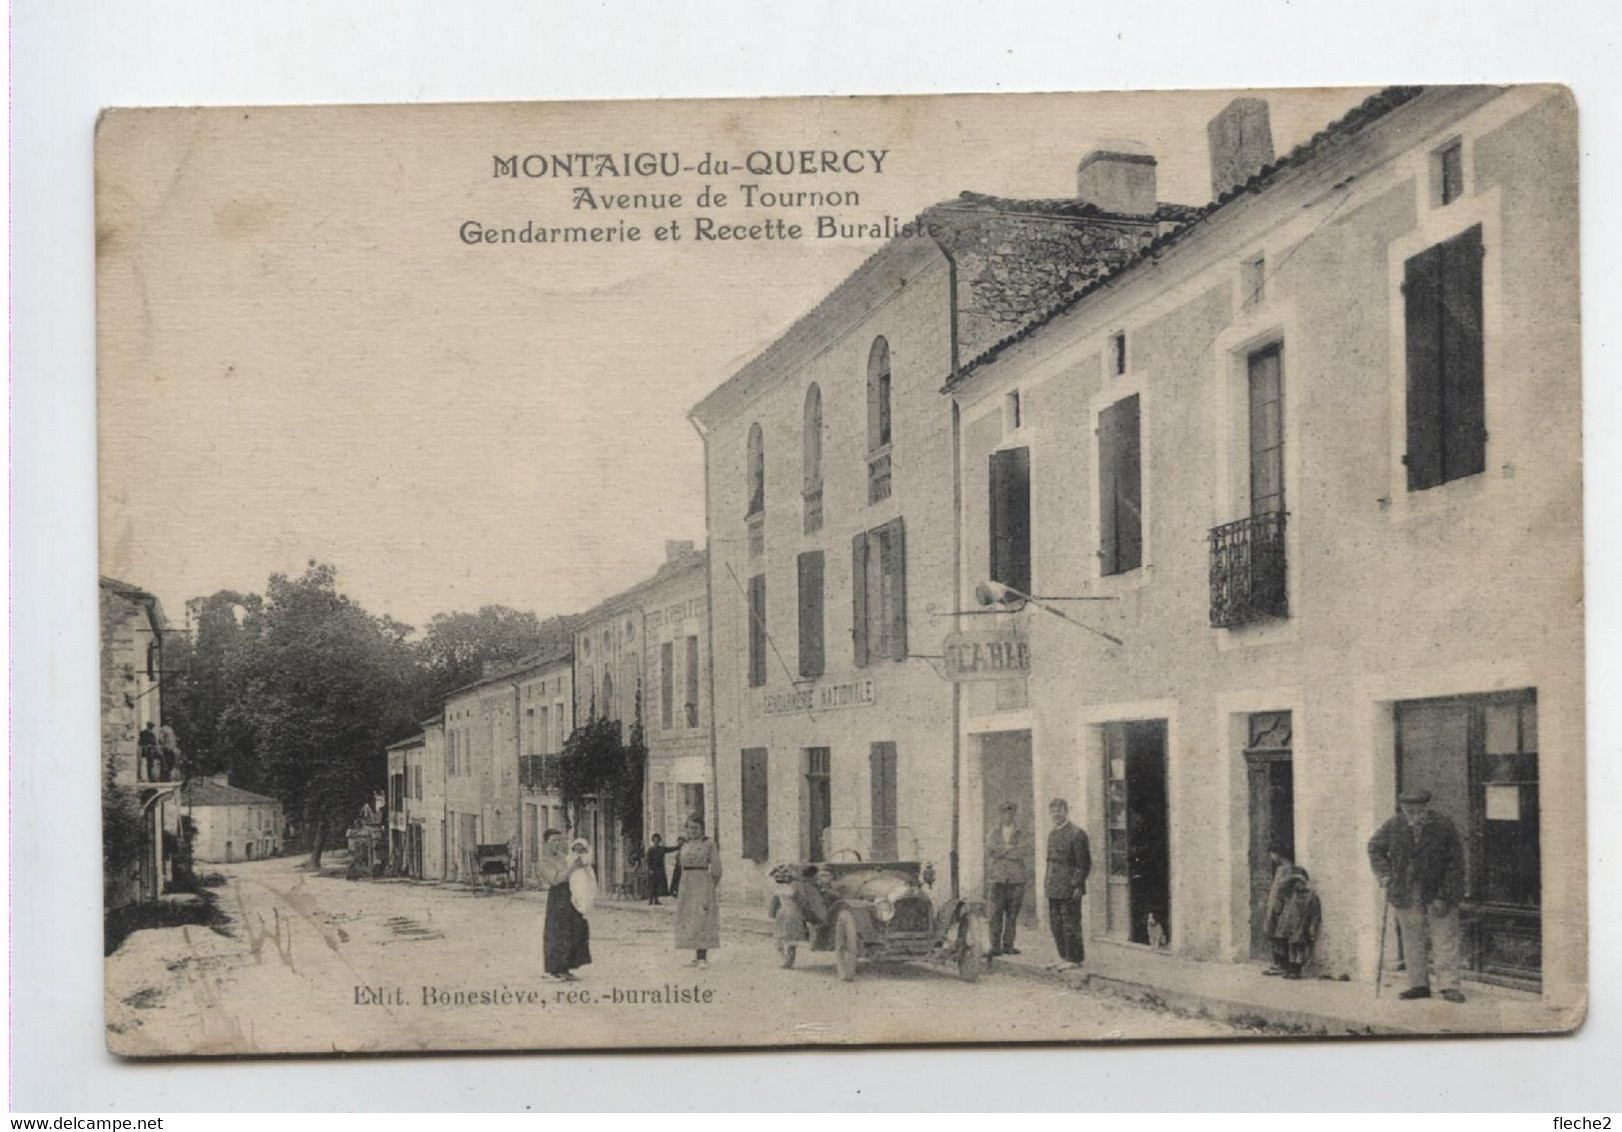 MONTAIGU Du QUERCY GENDARMERIE - Montaigu De Quercy